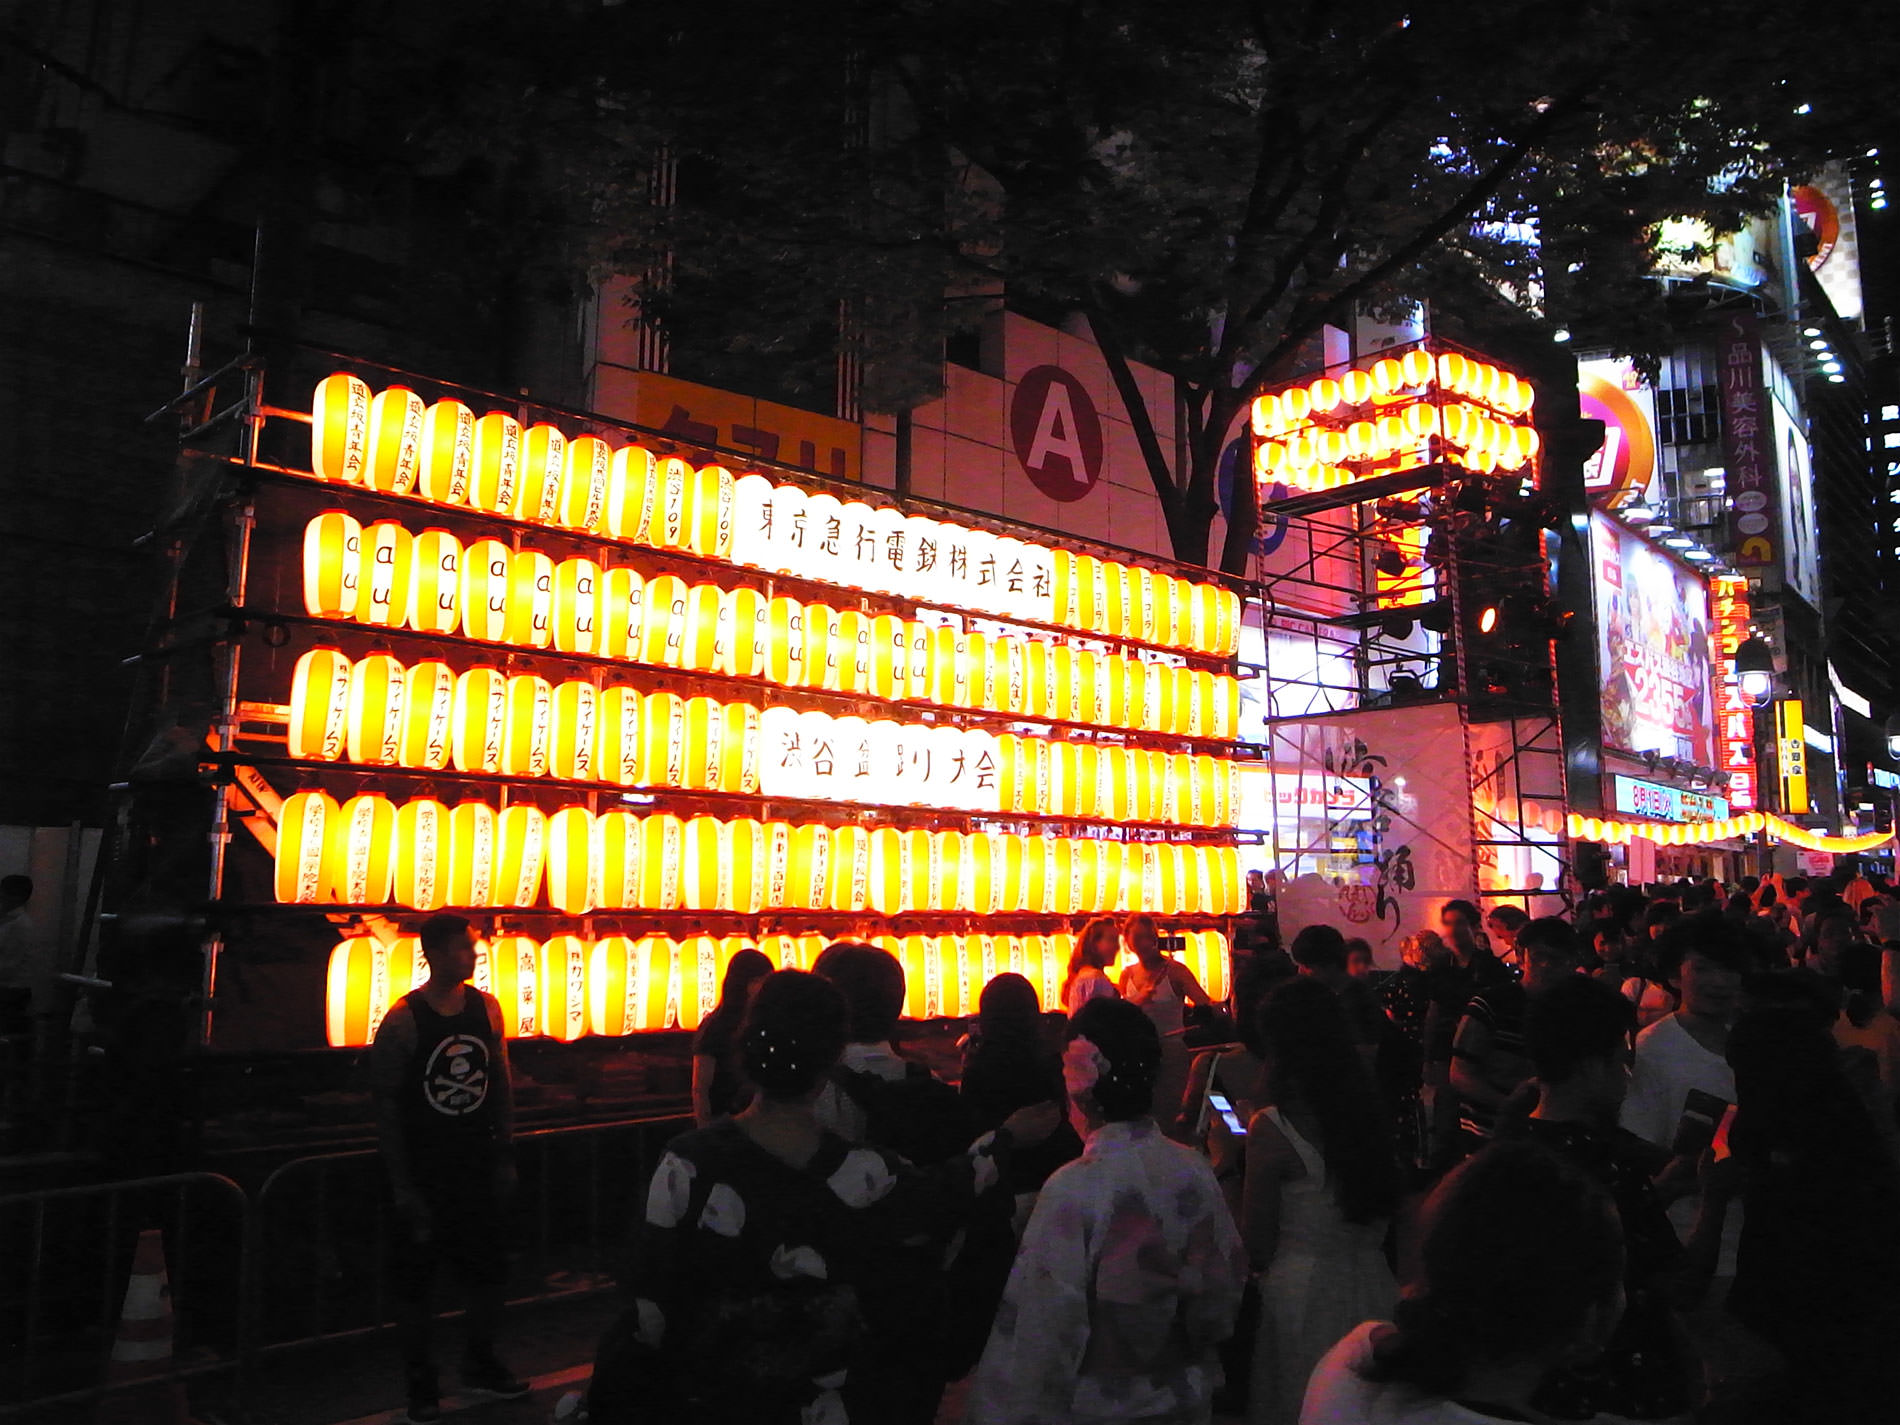 築地本願寺 納涼盆踊り 2017 と、渋谷盆踊りへ寄り道 | Tsukiji hongwanji temple BON festival dance 2017 and Shibuya BON festival dance